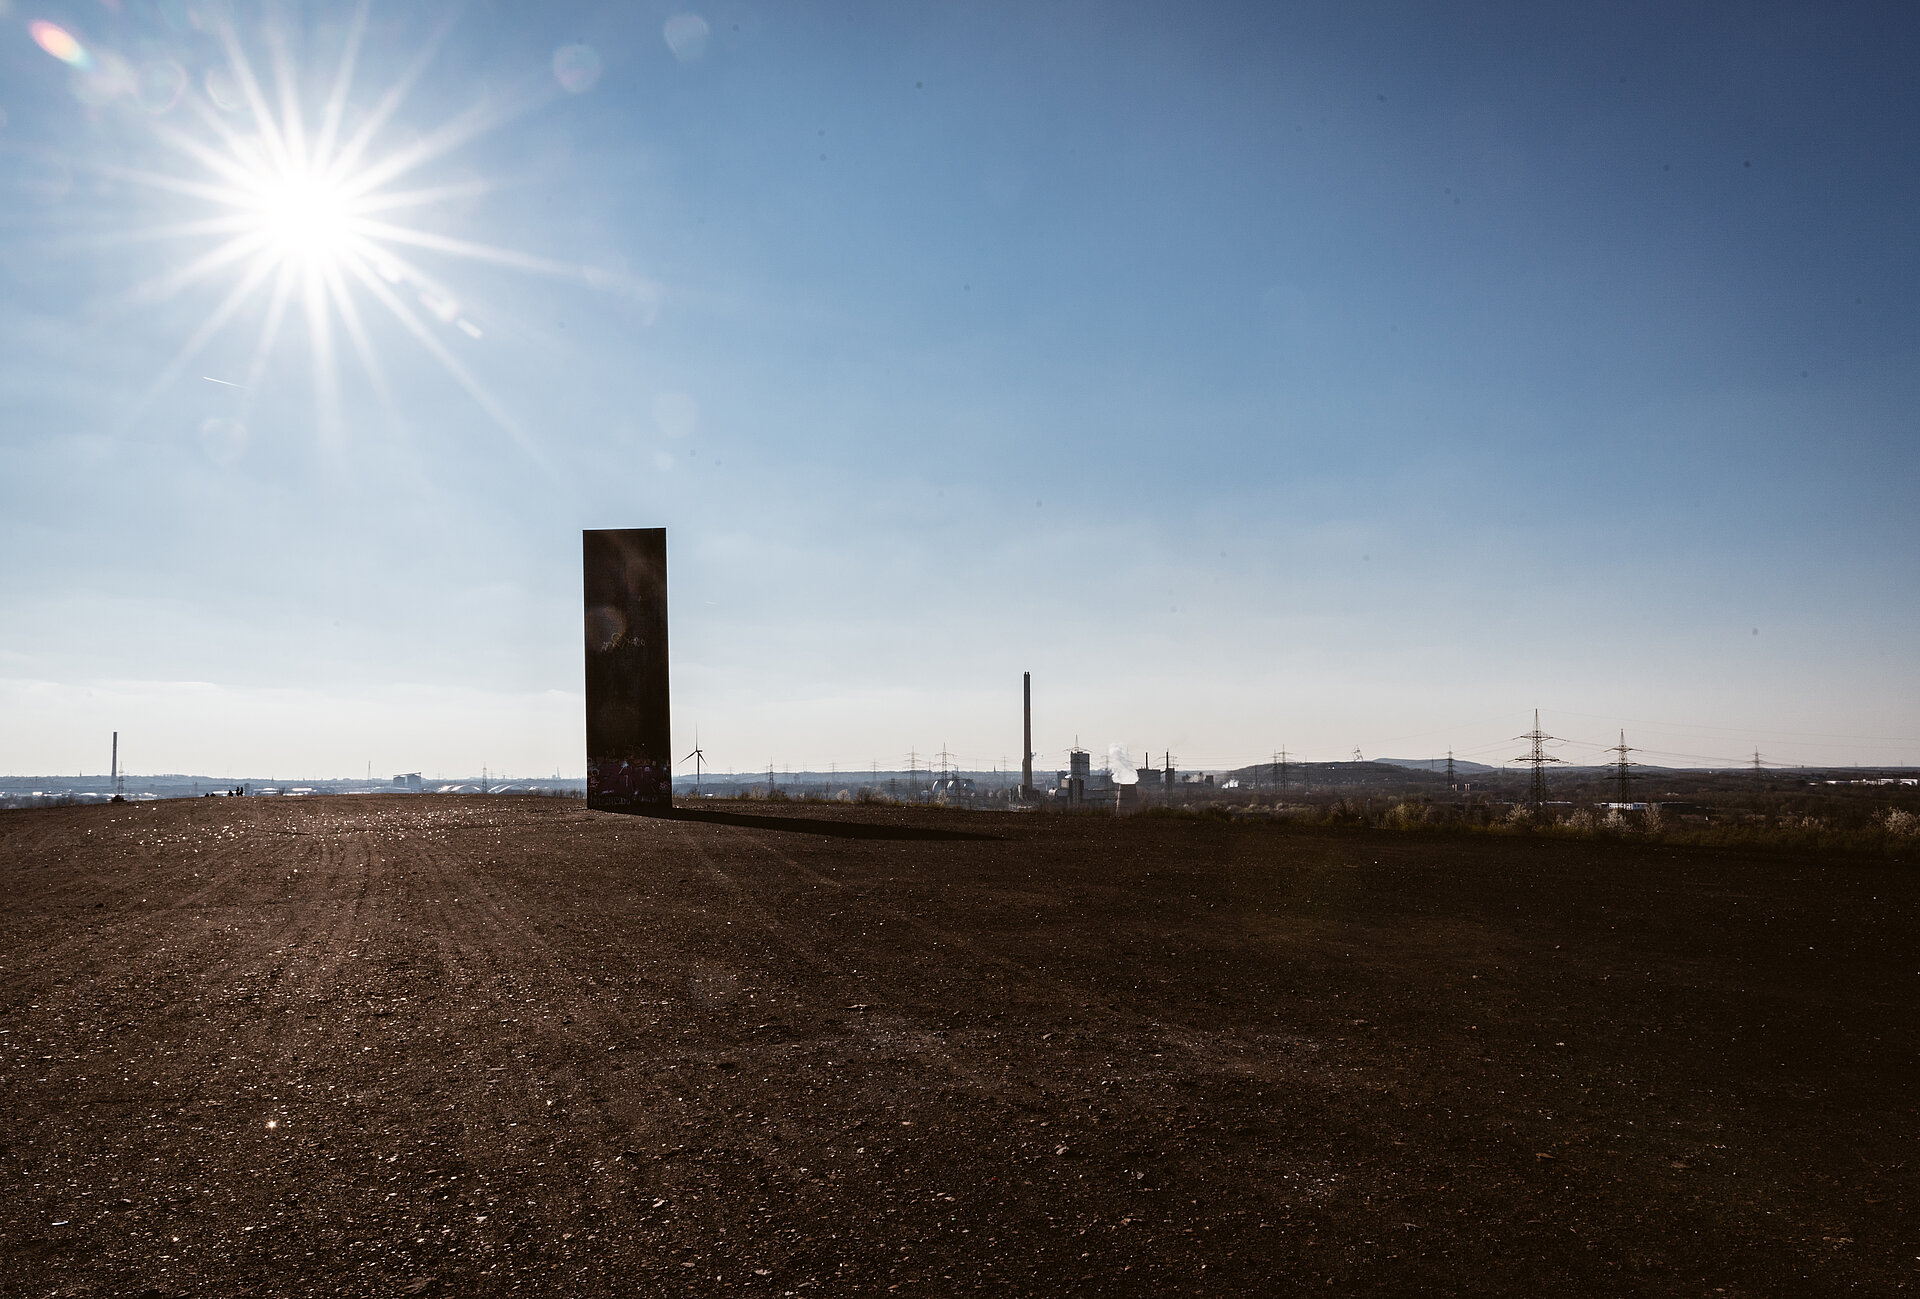 Richard Serras "Bramme für das Ruhrgebiet", Landmarke in der Region.